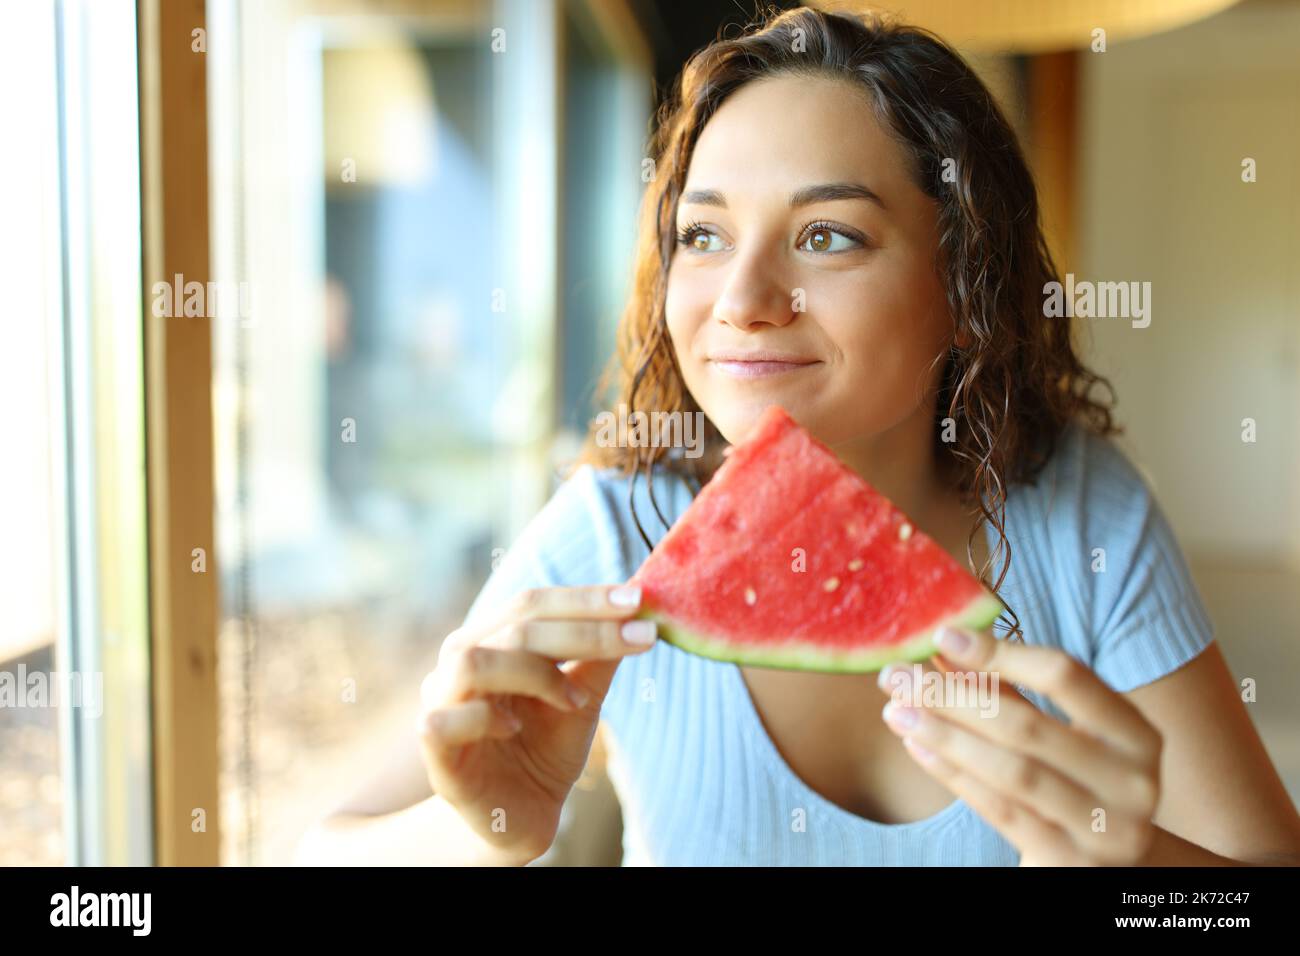 Bonne femme mangeant de la pastèque dans un restaurant Banque D'Images